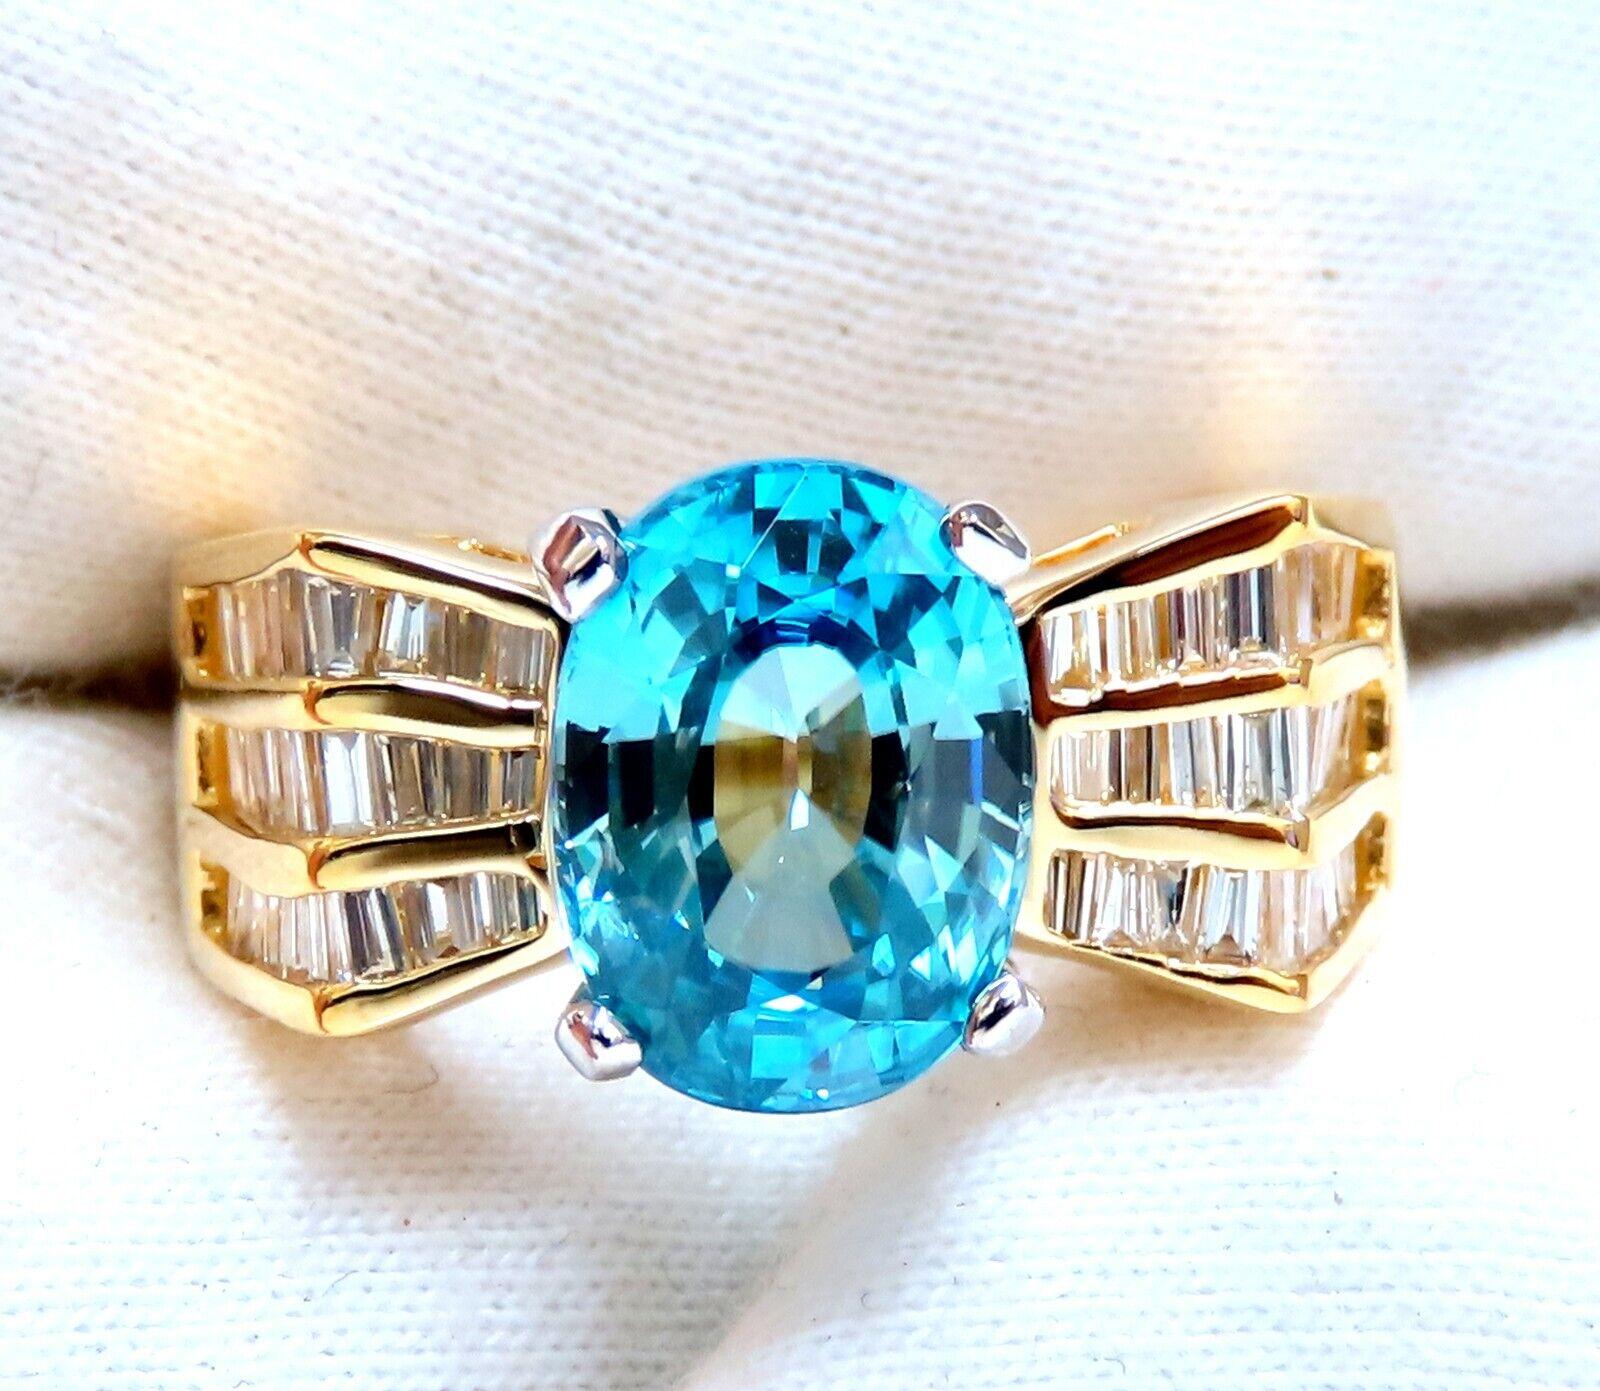 Baguette Cut 5.36 Carat Natural Blue Zircon Baguette Diamond Ring 14kt Gold For Sale